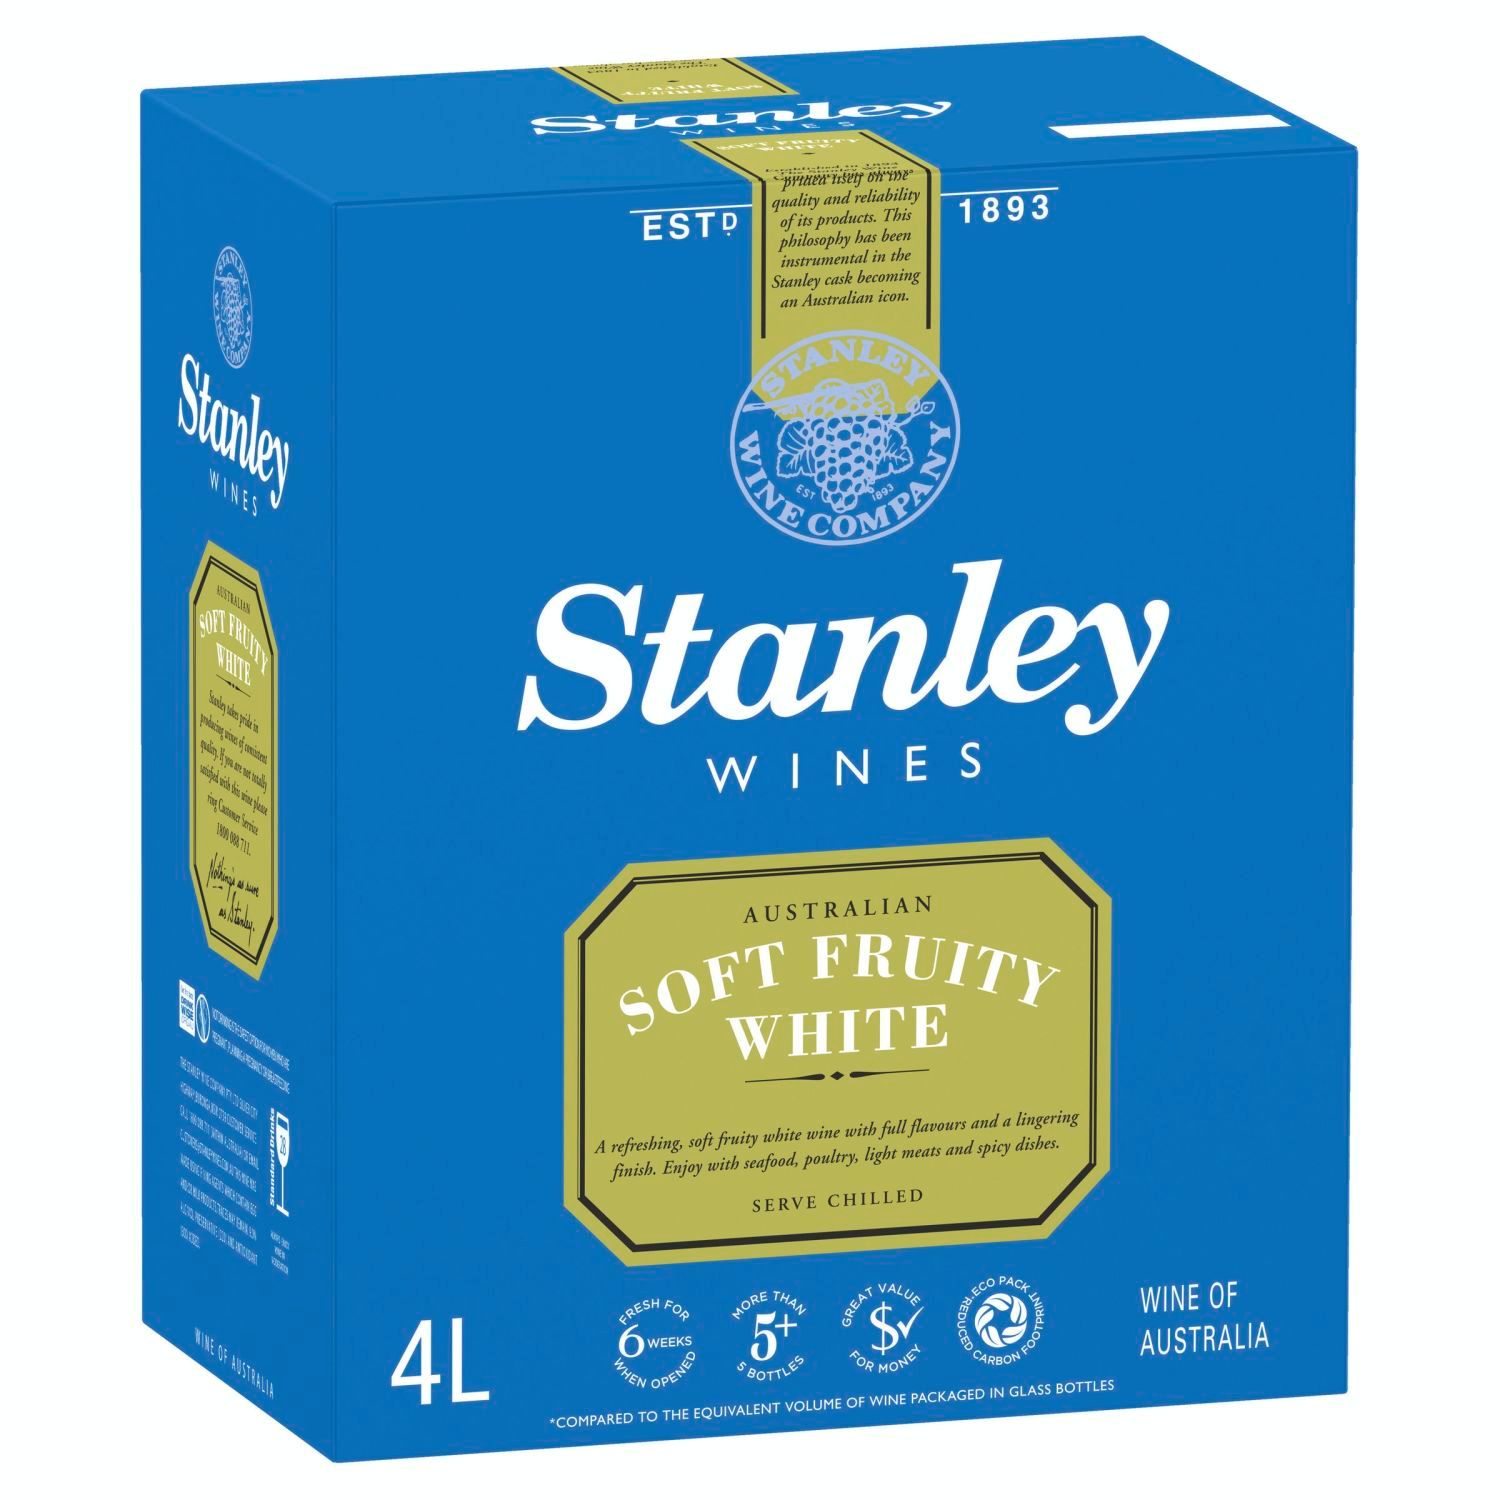 Stanley Soft Fruity White Cask 4L<br /> <br />Alcohol Volume: 9.00%<br /><br />Pack Format: Cask<br /><br />Standard Drinks: 28</br /><br />Pack Type: Cask<br /><br />Country of Origin: Australia<br /><br />Region: Multi-Regional Blend<br /><br />Vintage: Non Vintage<br />